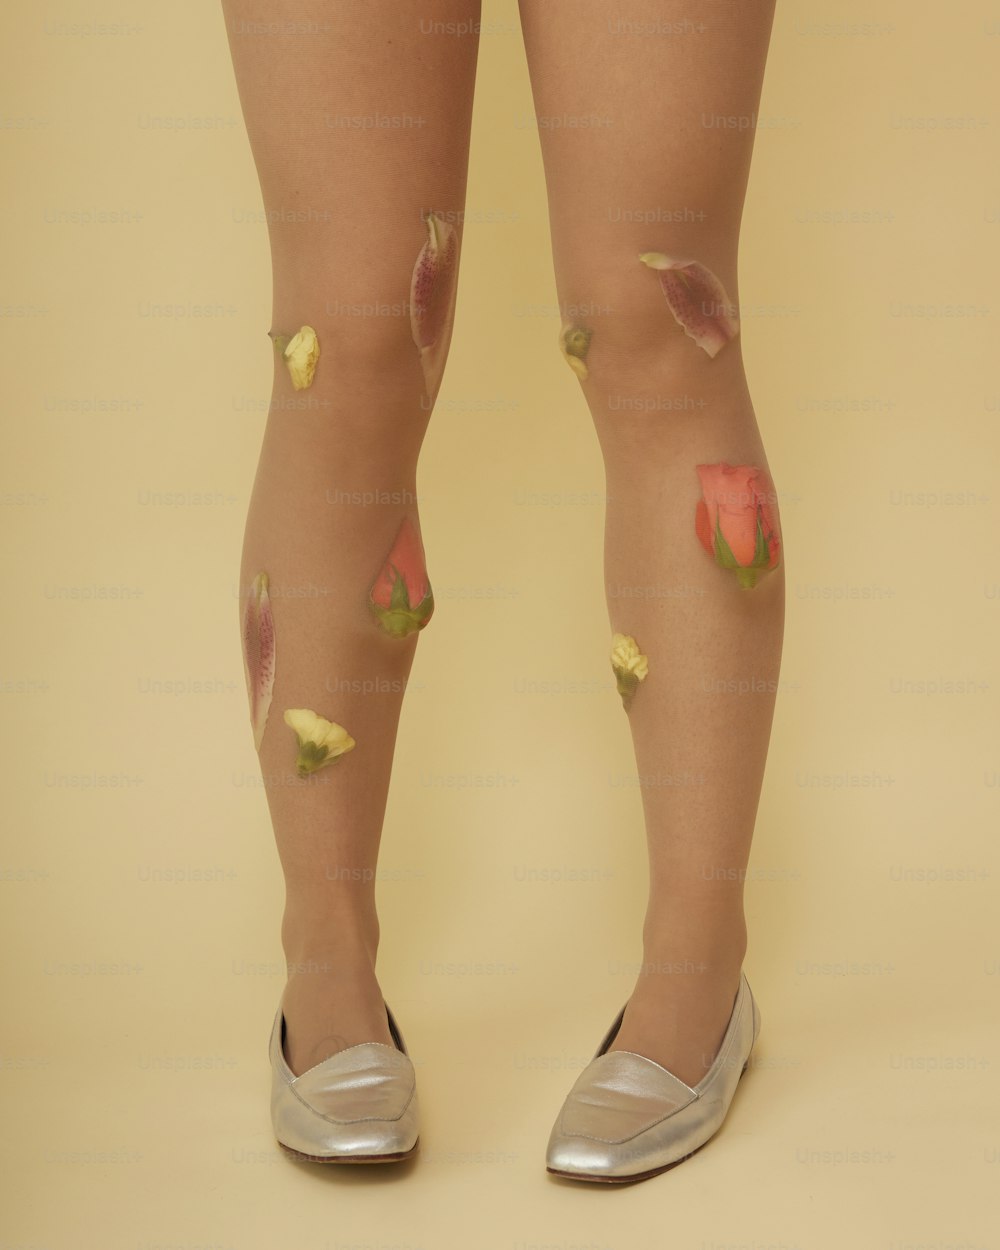 Die Beine einer Frau mit Farbflecken darauf